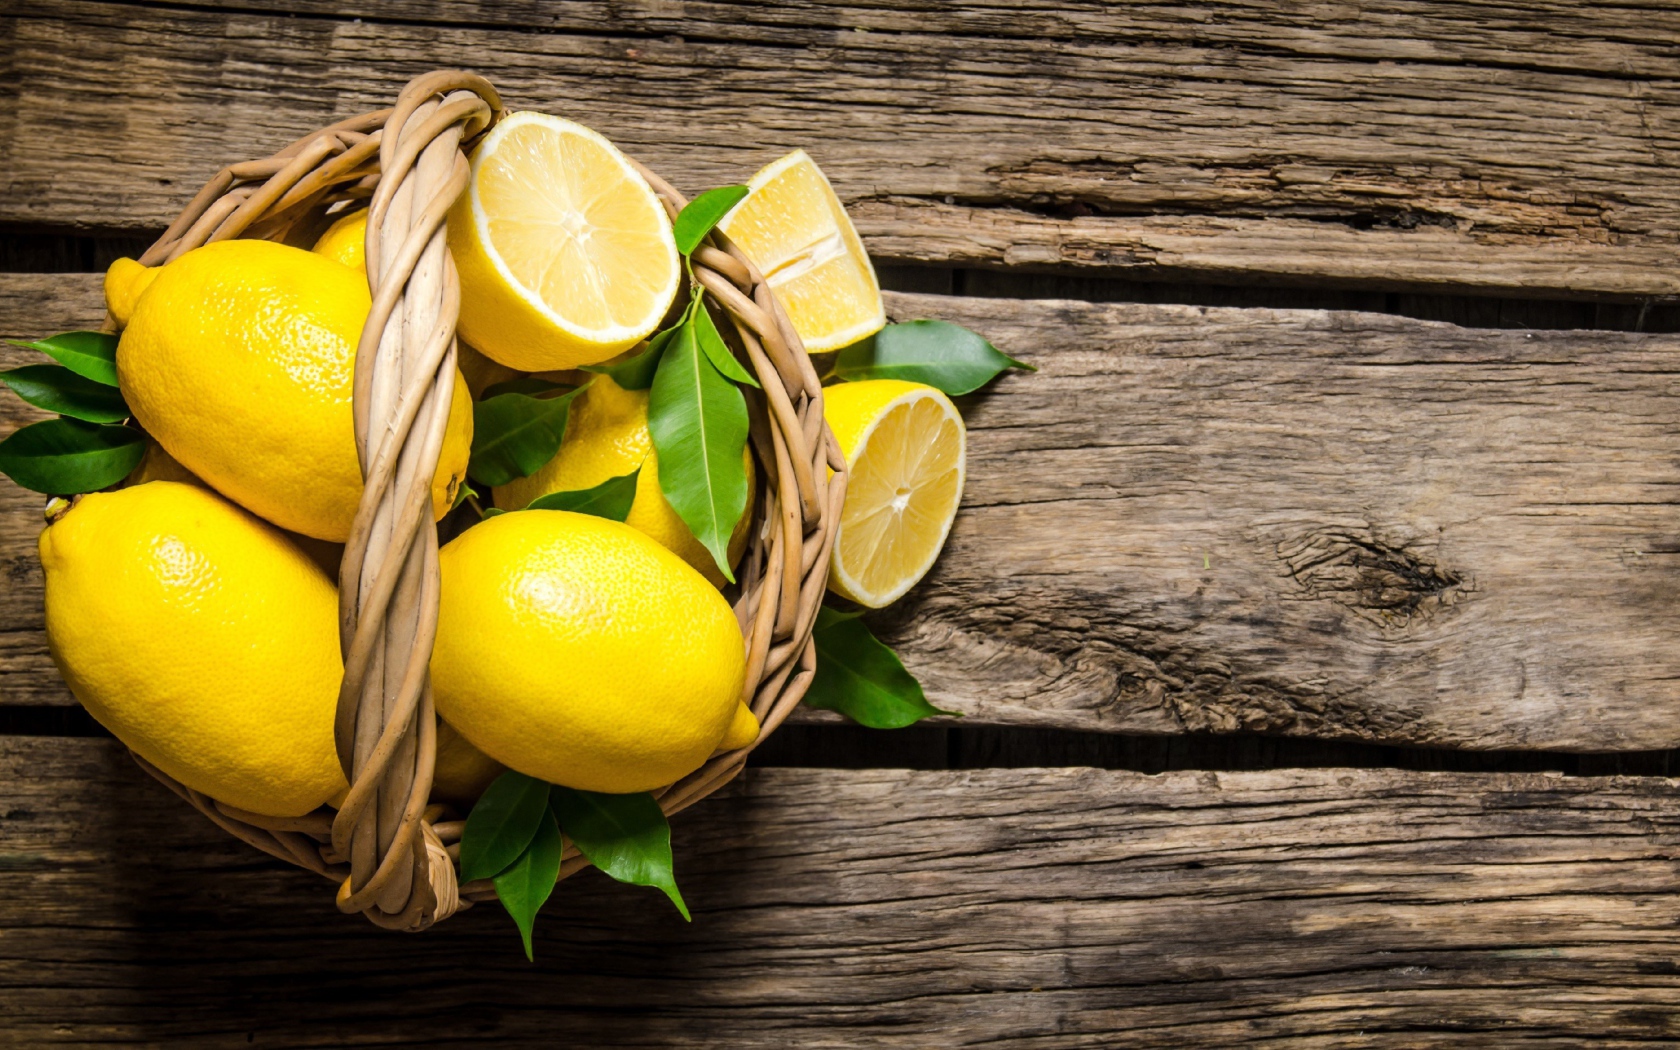 Красивые желтые лимоны в корзине на деревянном столе